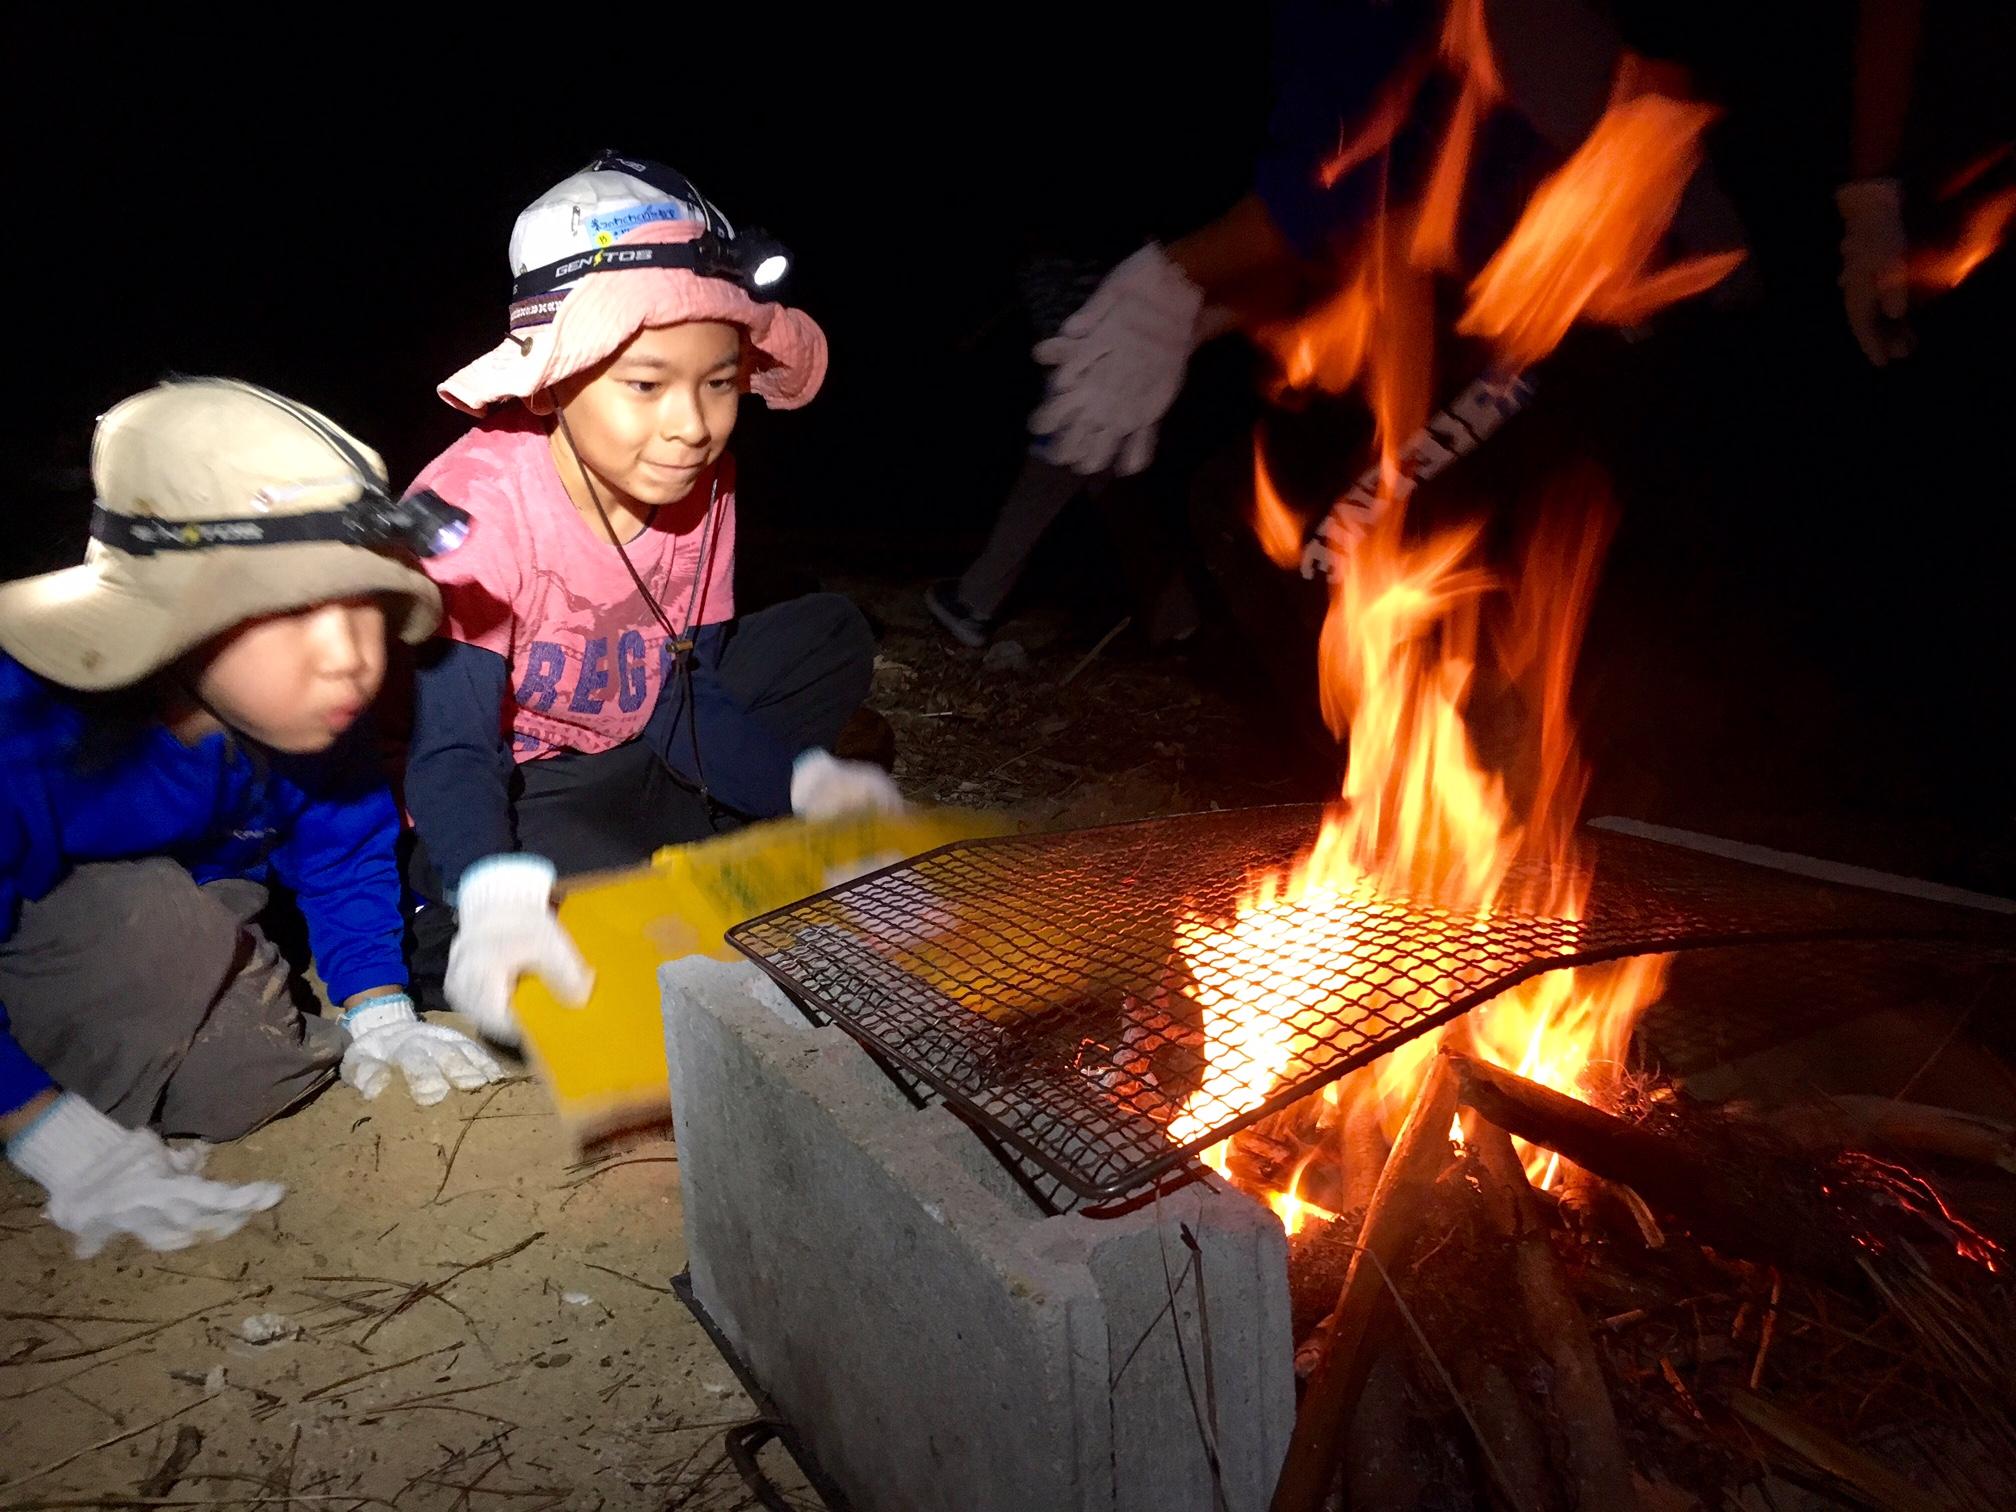 ネコクラブb 04 何でもありキャンプ １日目 夕食は焚き火で魚料理だ うまく火がつくかな ねこんちゅ通信 ネコのわくわく自然教室